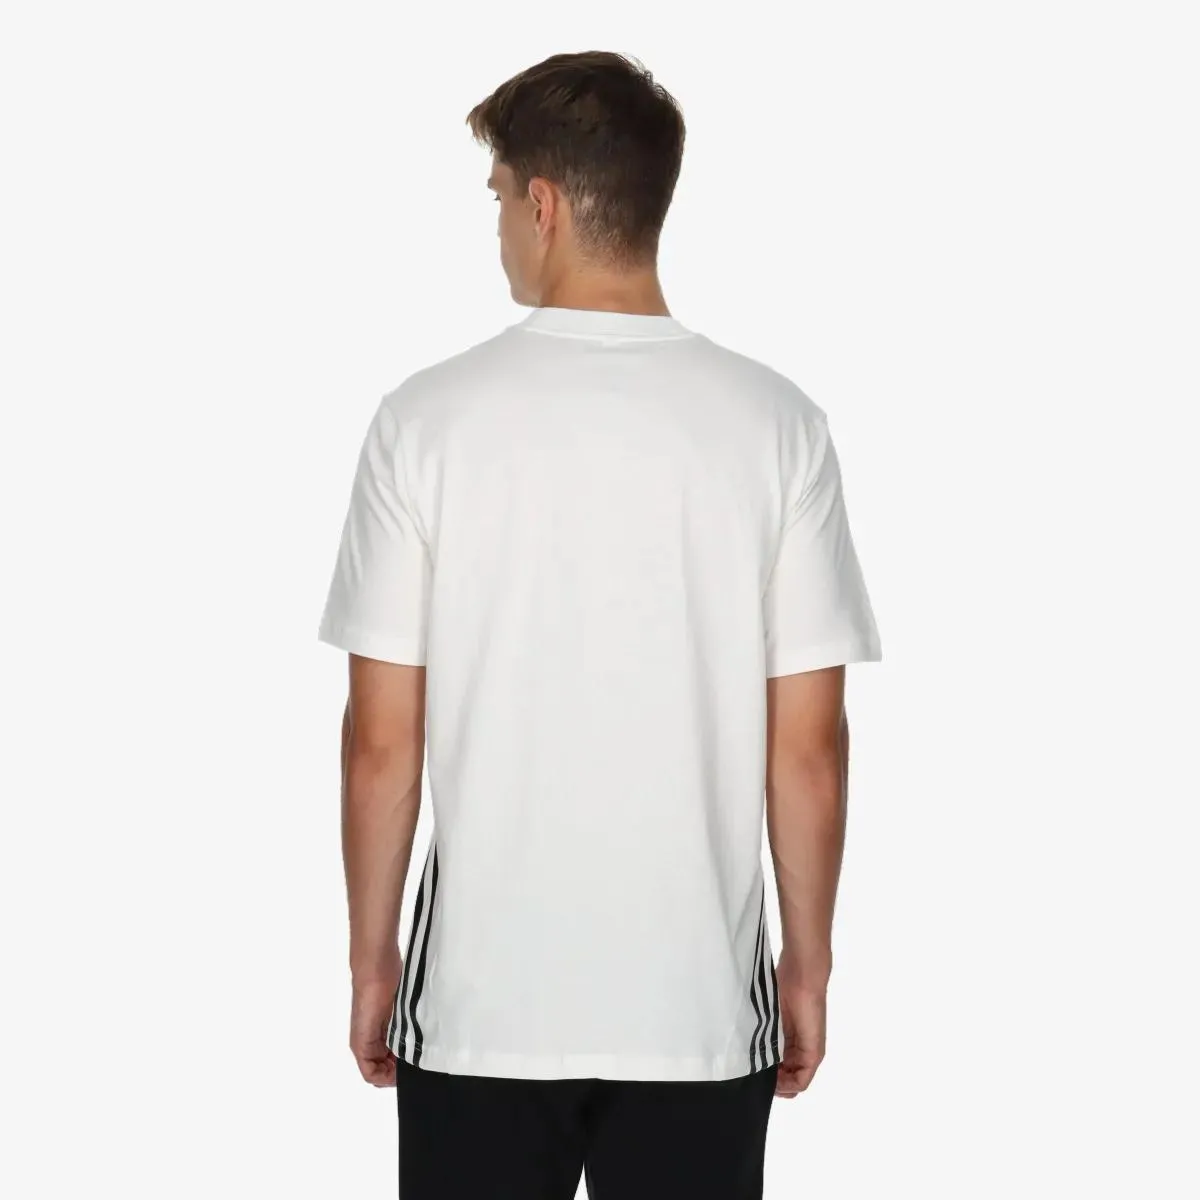 adidas T-shirt Future icons 3-stripes 